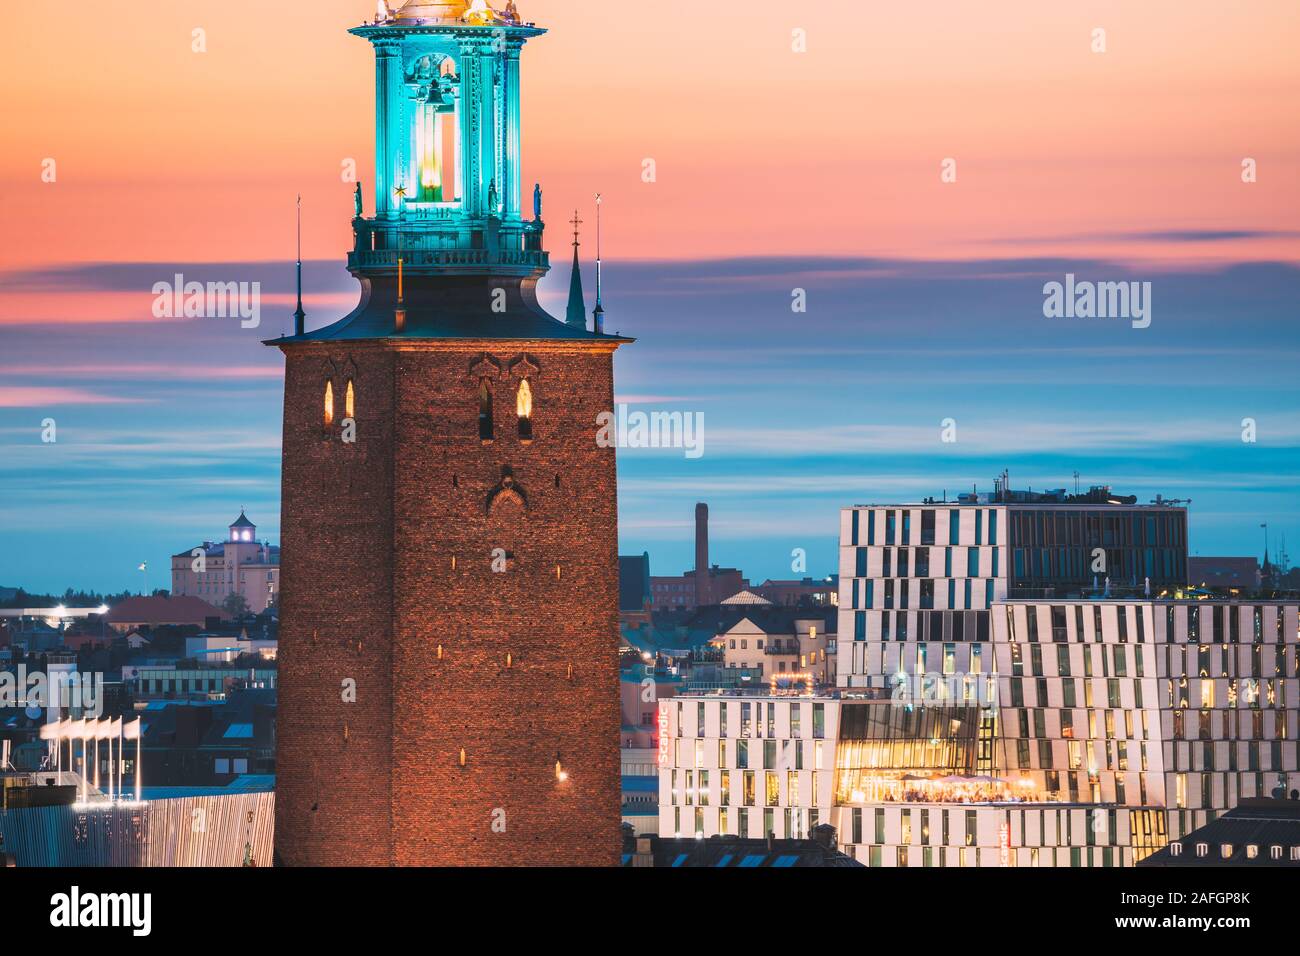 Stockholm, Schweden - 29. Juni 2019: in der Nähe der berühmten Turm von Stockholm City Hall. Beliebtes Ziel malerischen im Sonnenuntergang Dämmerung Dämmerung leuchtet. Eveni Stockfoto